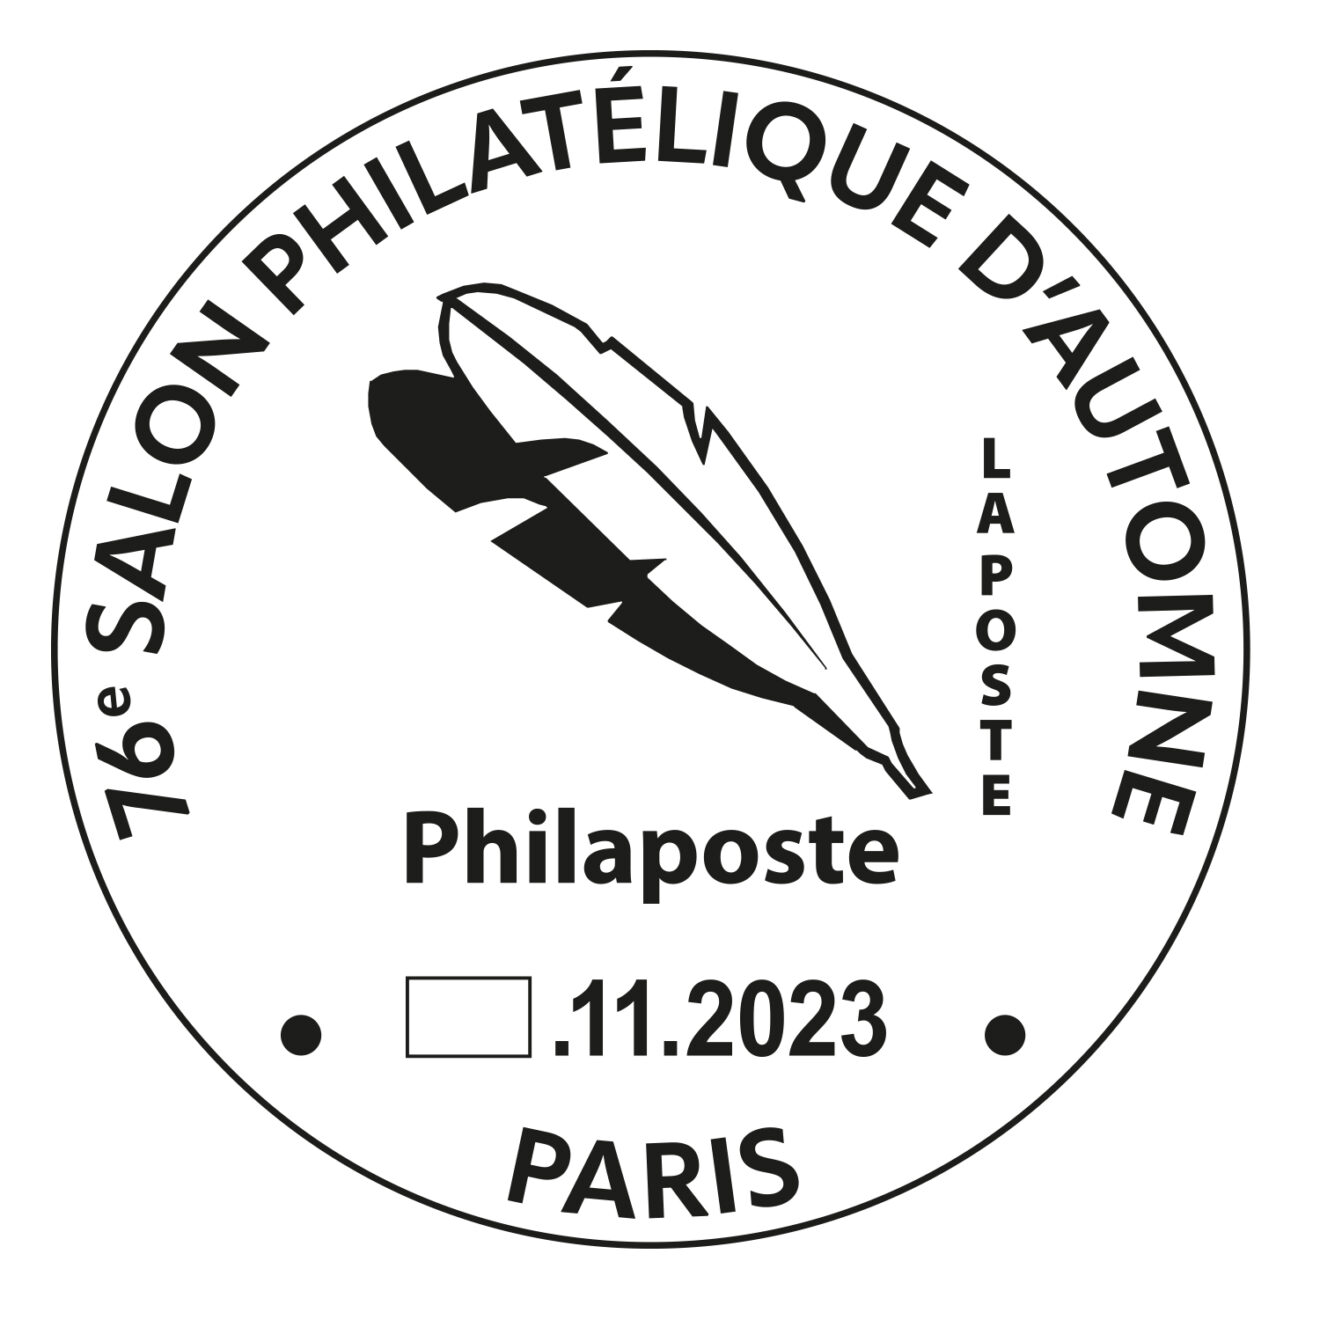 ATG présent au Salon philatélique d'automne 2023 à Paris